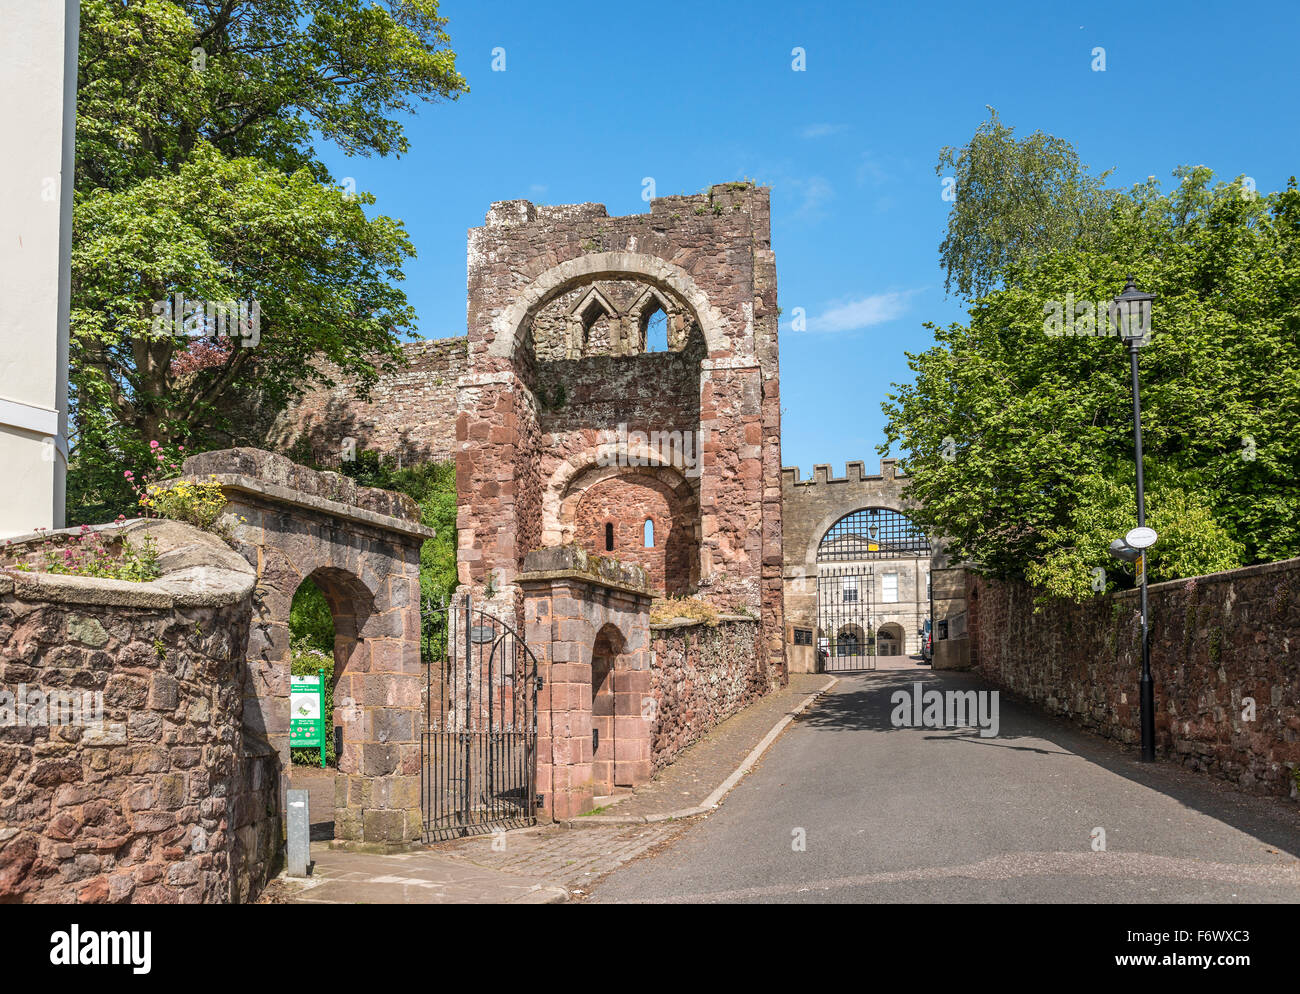 Entrance to Rougemount Castle, Exeter, Devon, England, UK Stock Photo